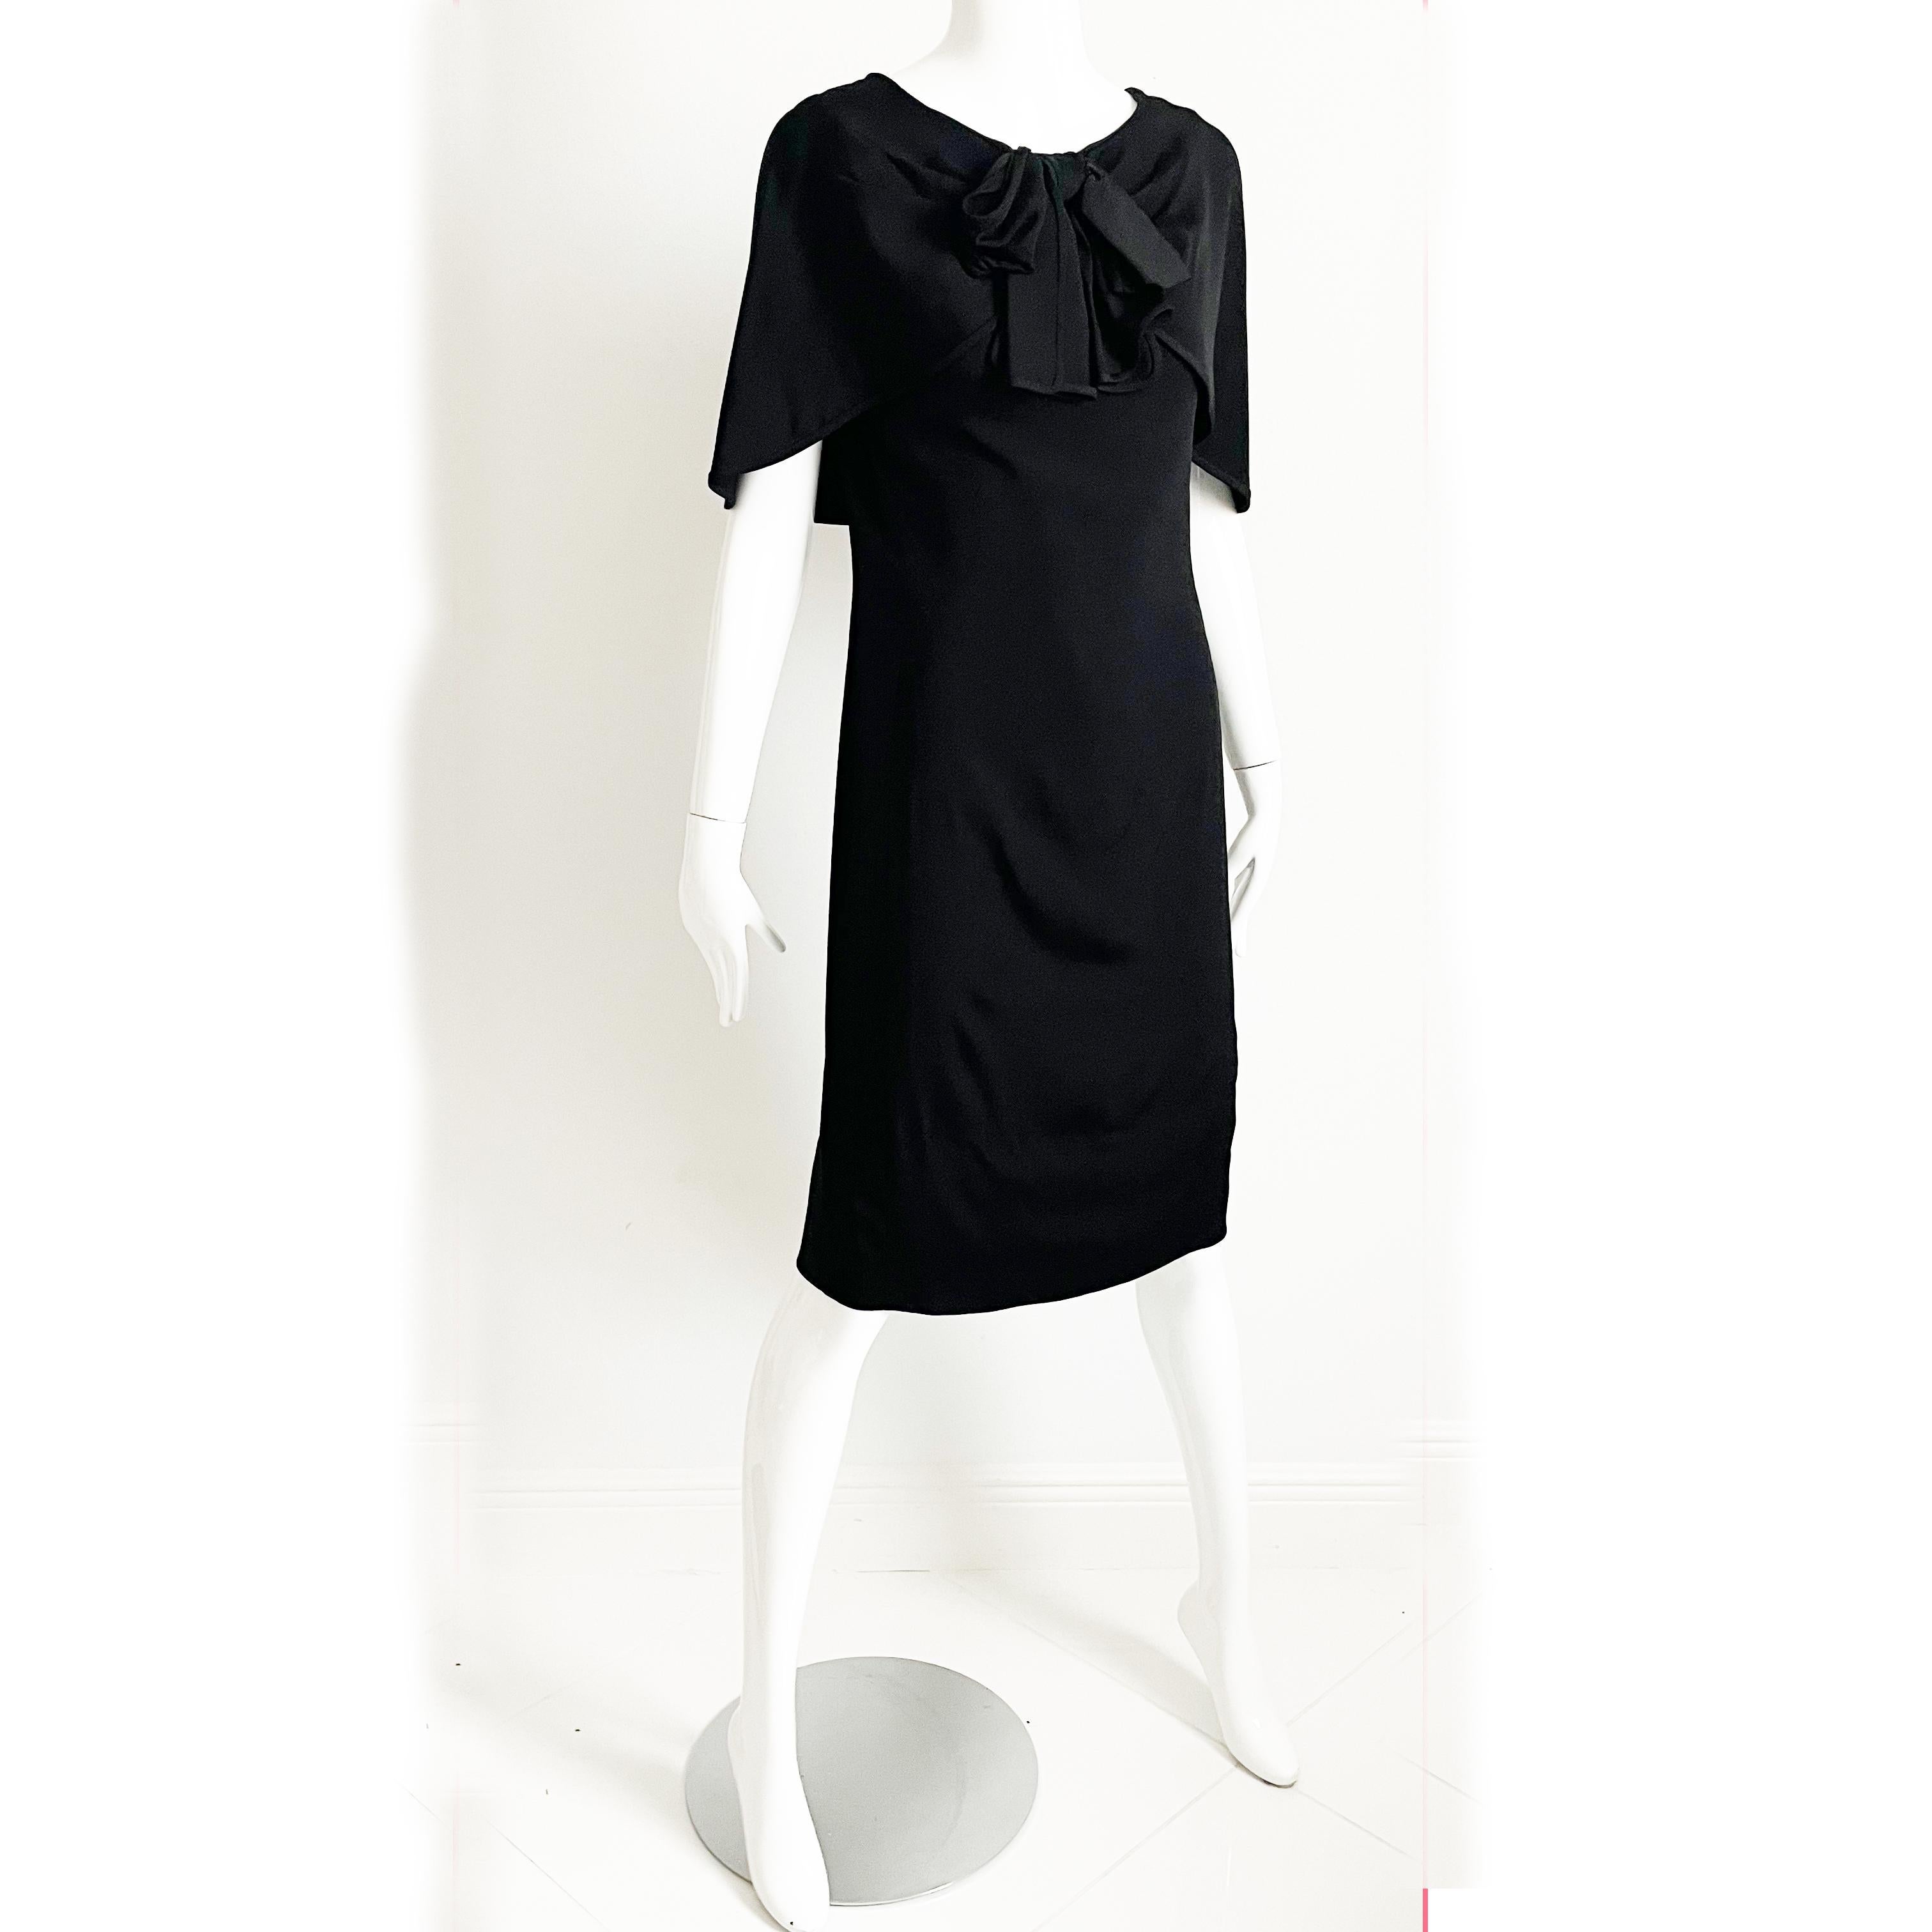 Dieses unglaubliche kleine schwarze Kleid ist ein frühes Stück von Pauline Trigere aus den 1950er Jahren. 

Es ist aus geschmeidiger schwarzer Seide gefertigt, hat einen drapierten Schalkragen mit einer schwarzen Seidenschleife auf der Brust und